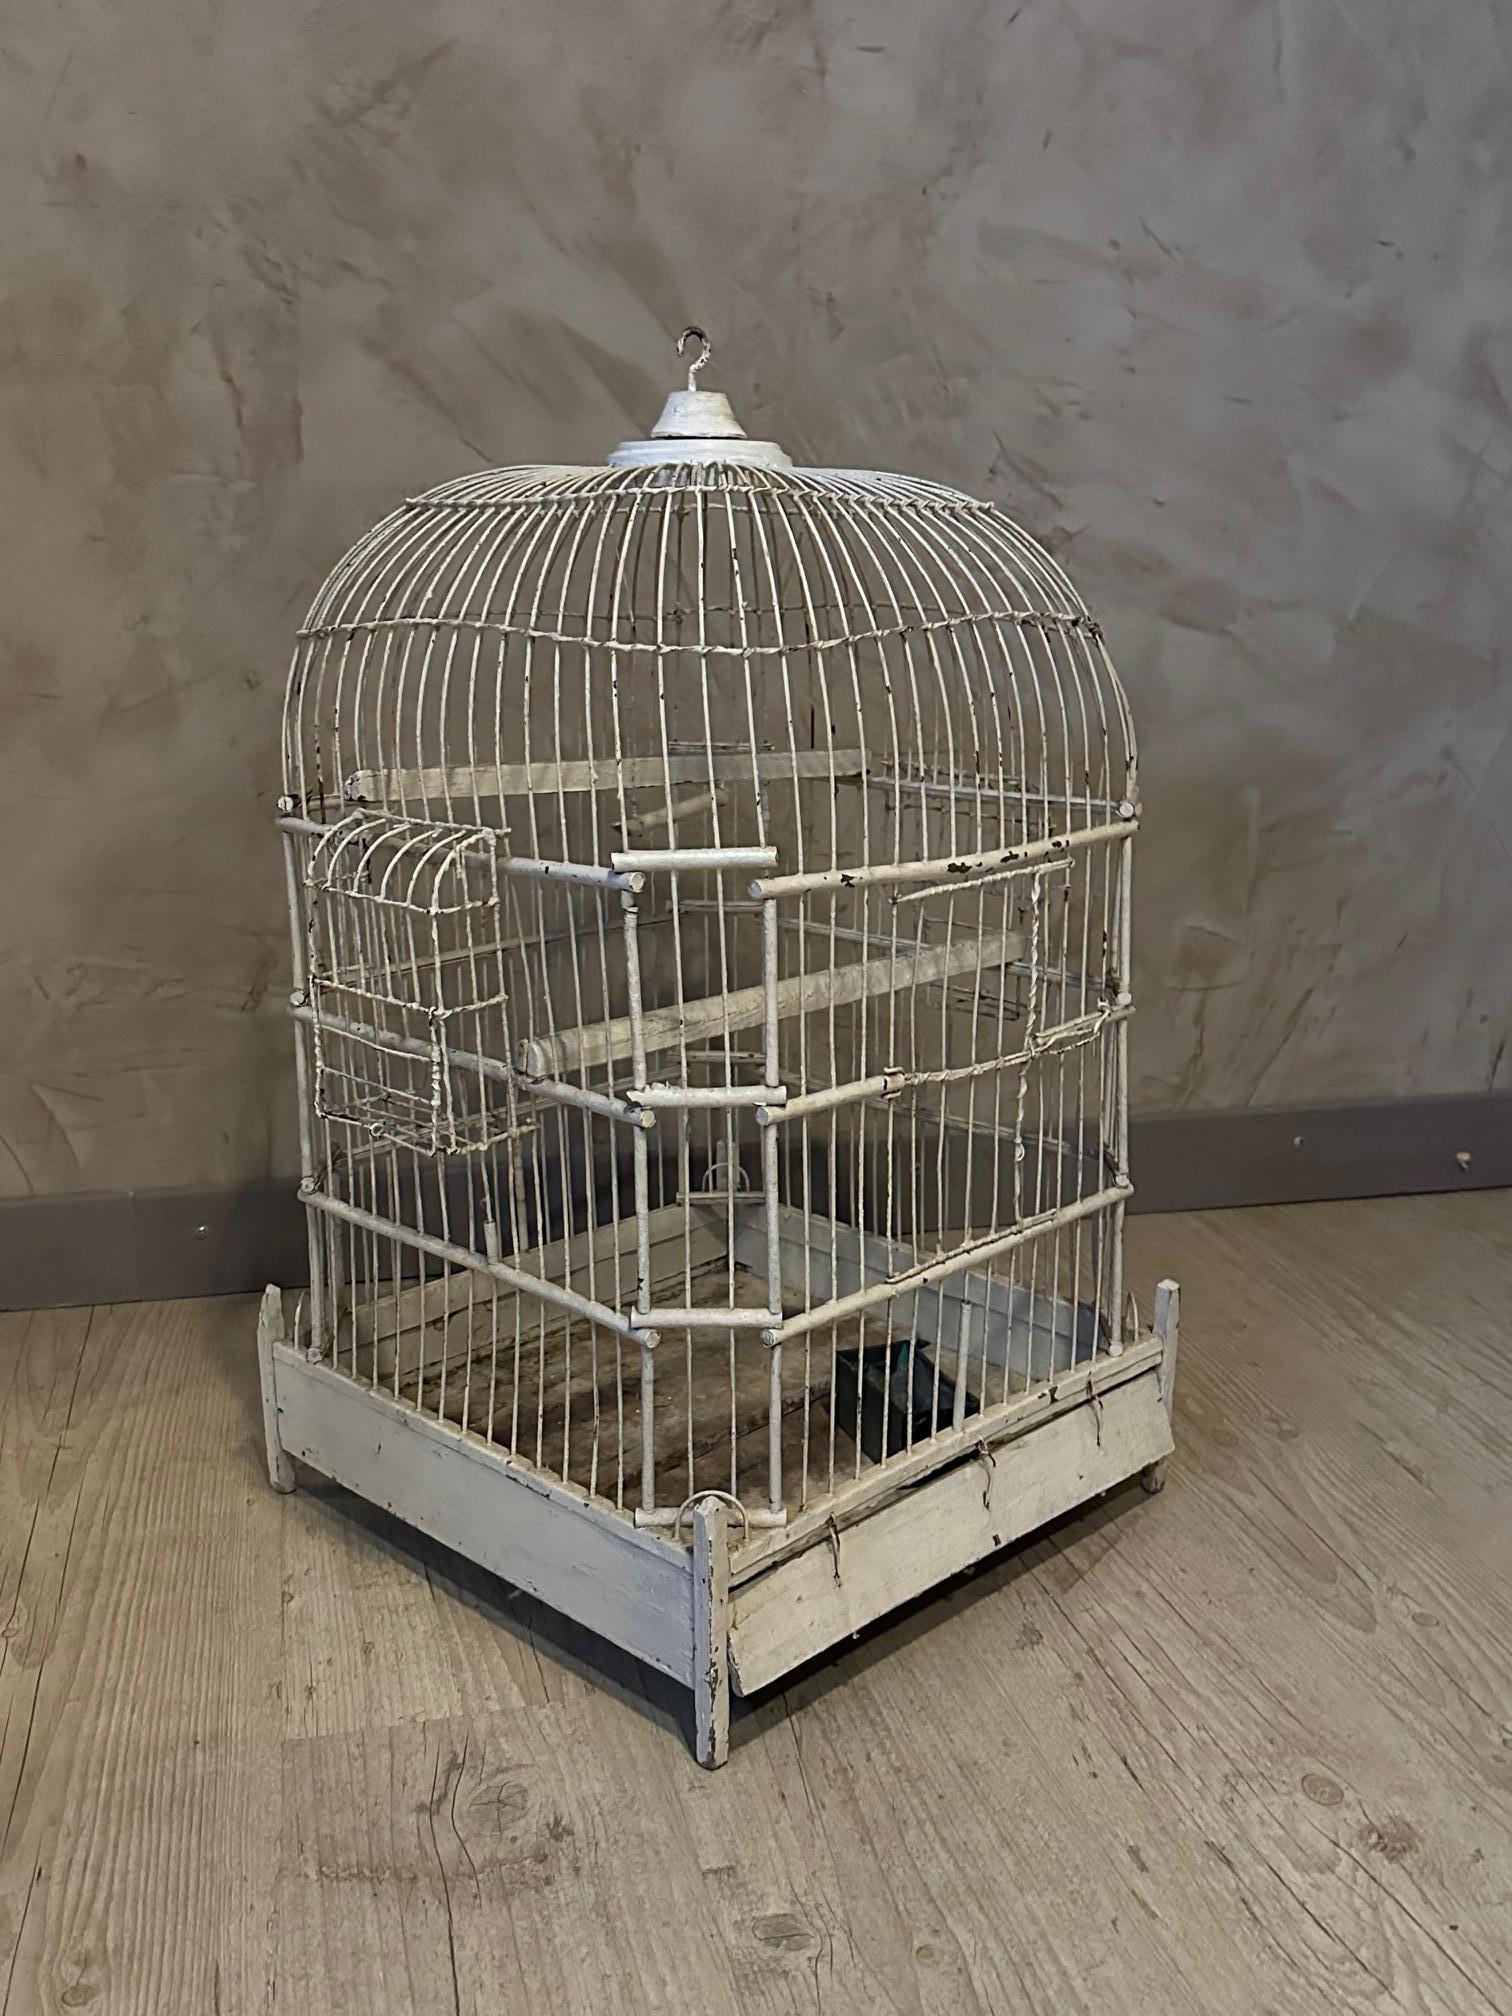 Schöner Vogelkäfig aus den 1920er Jahren aus weiß lackiertem Metall und Holz.
Schwenktür. Futterstelle und Sitzstange.